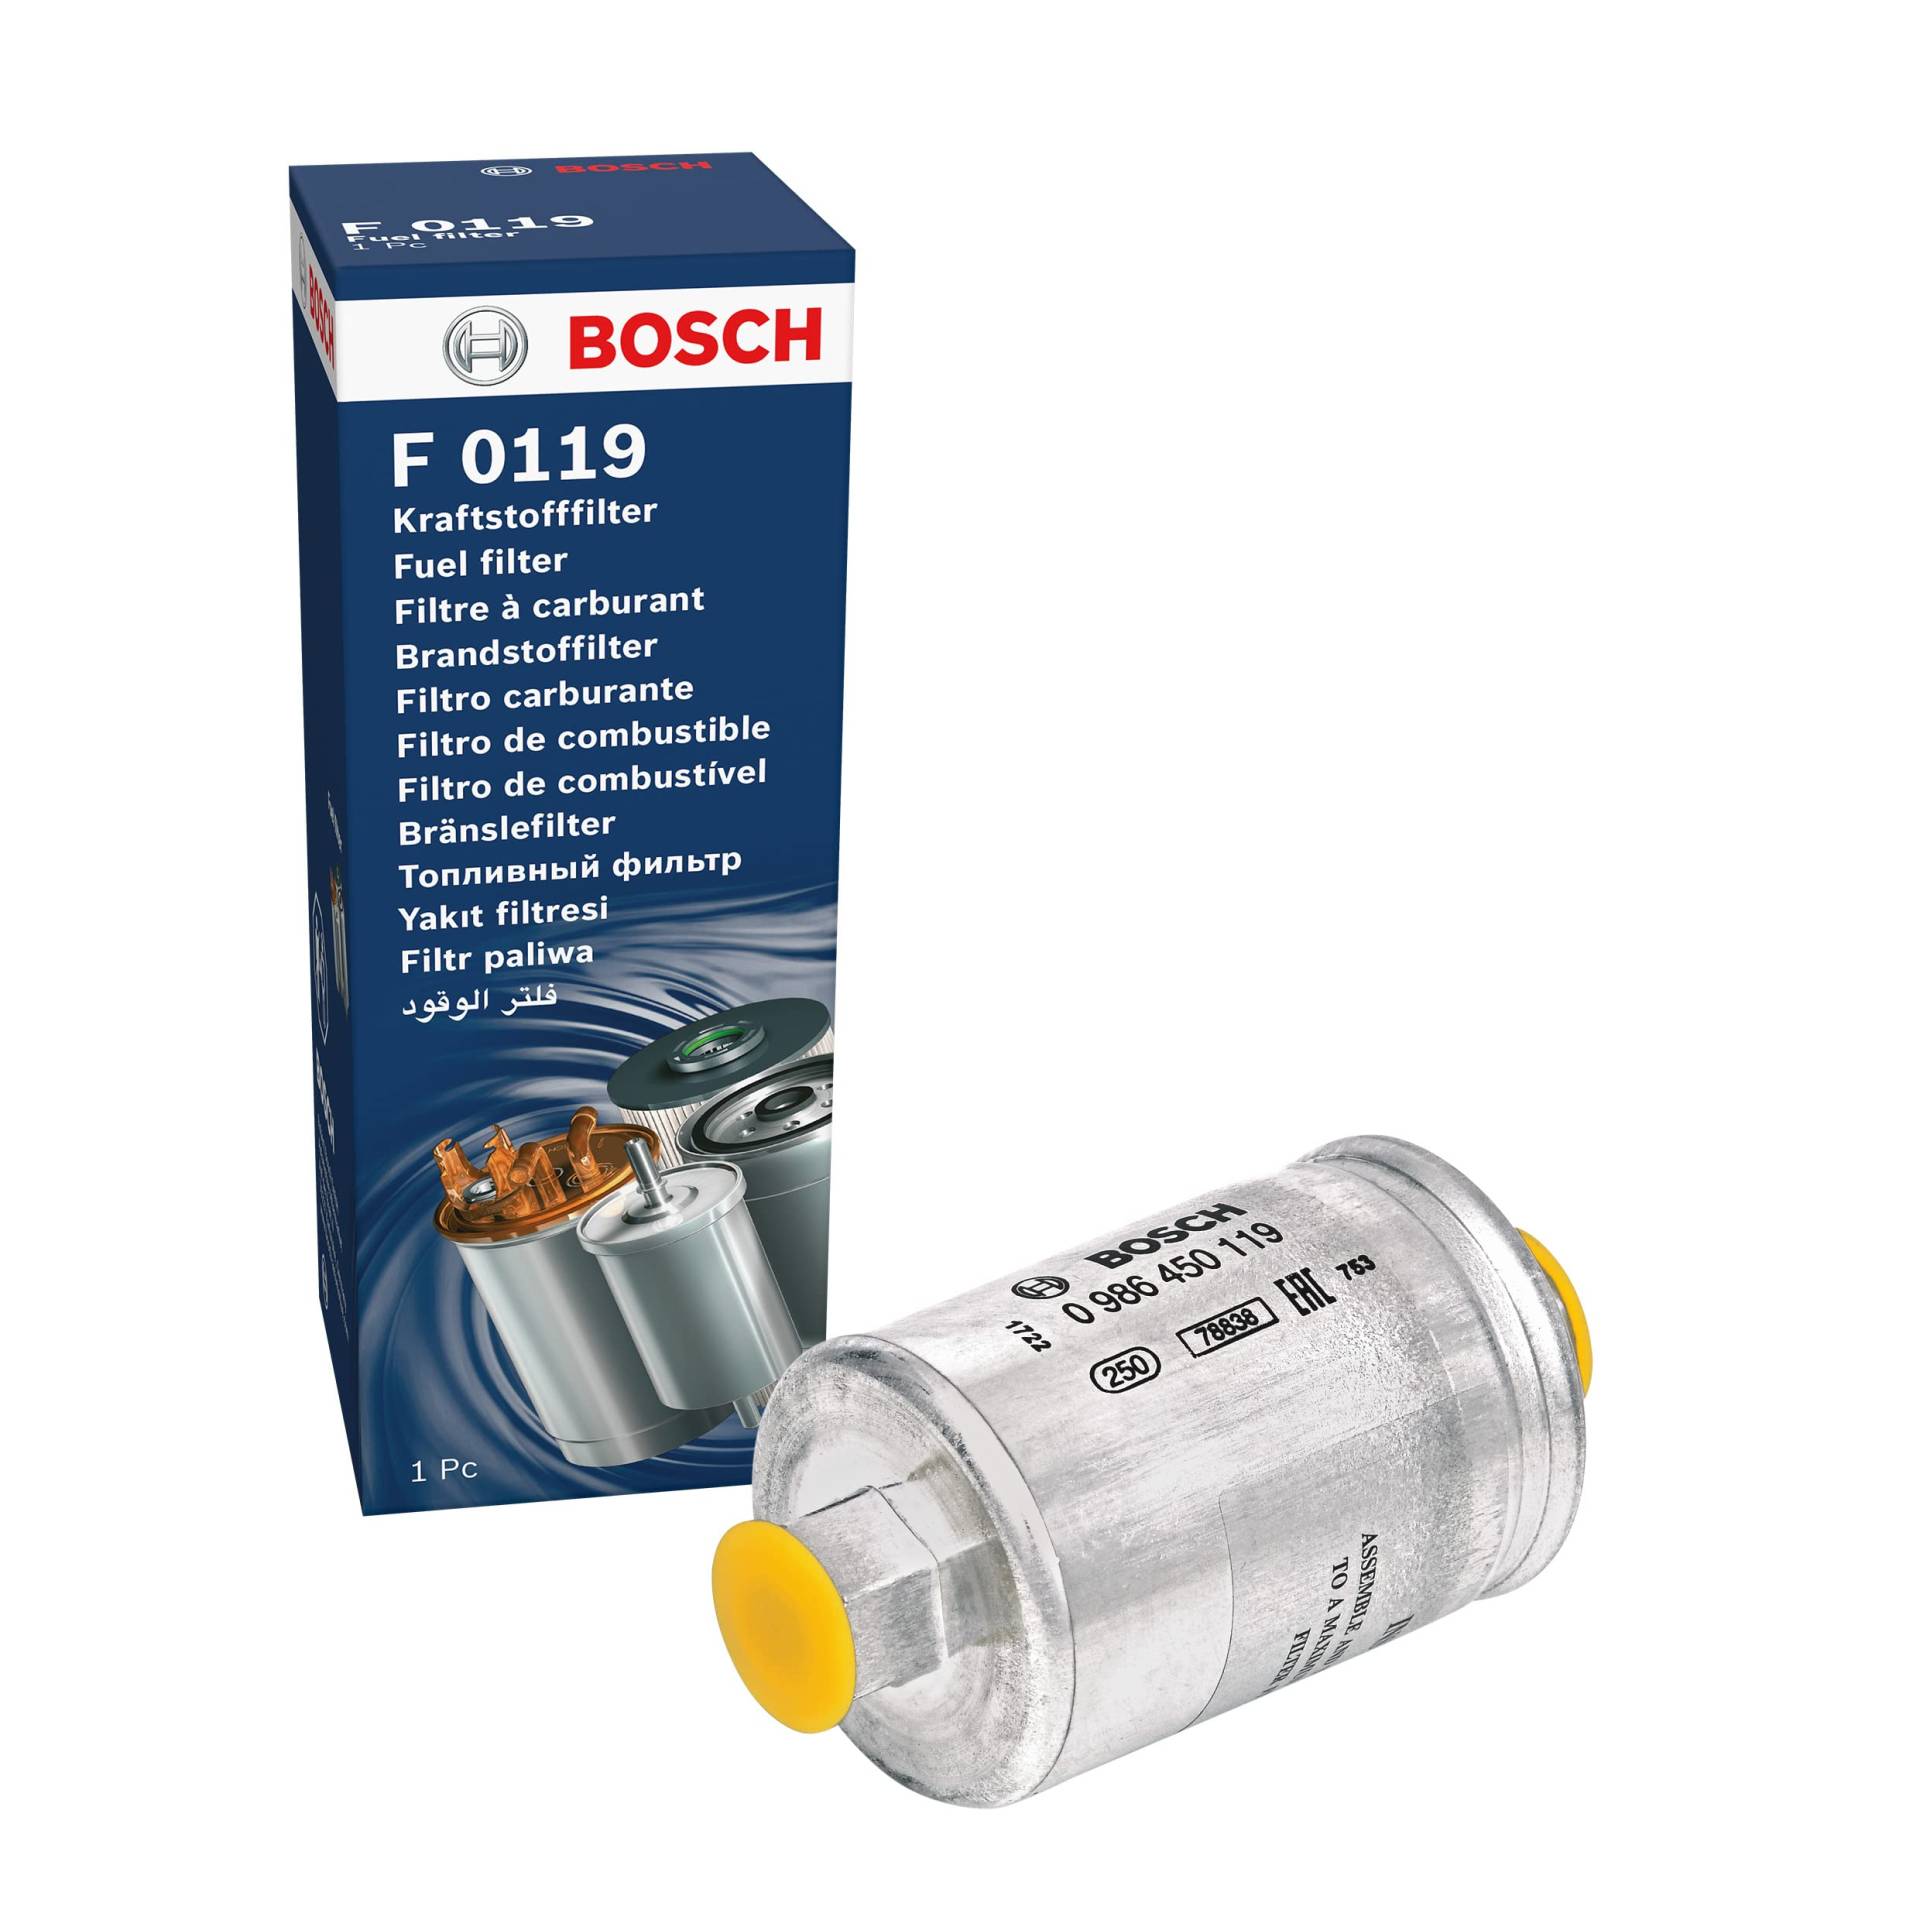 Bosch F0119 - Benzinfilter Auto von Bosch Automotive